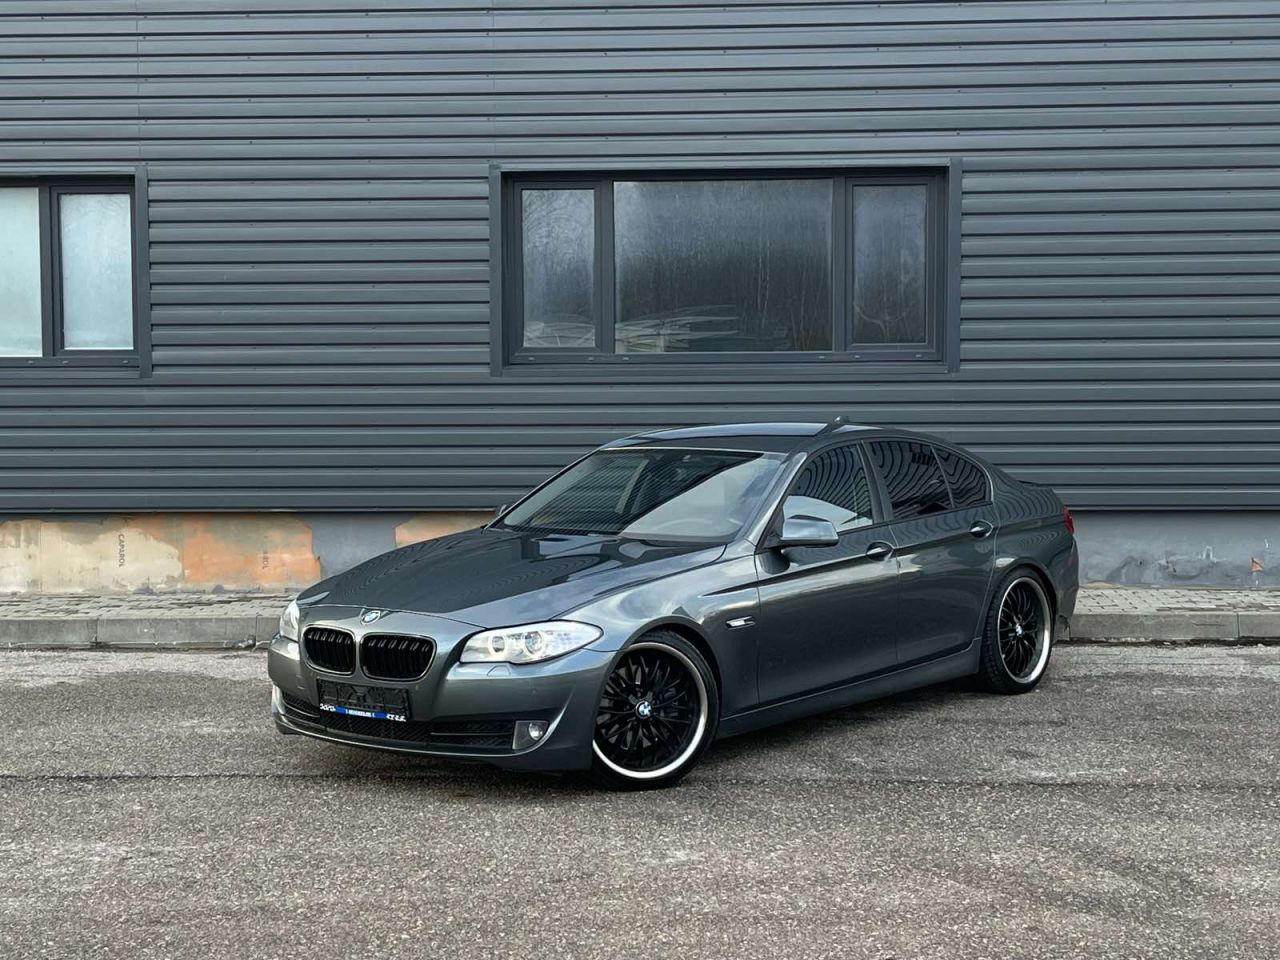 BMW 535, 3.0 l., sedanas